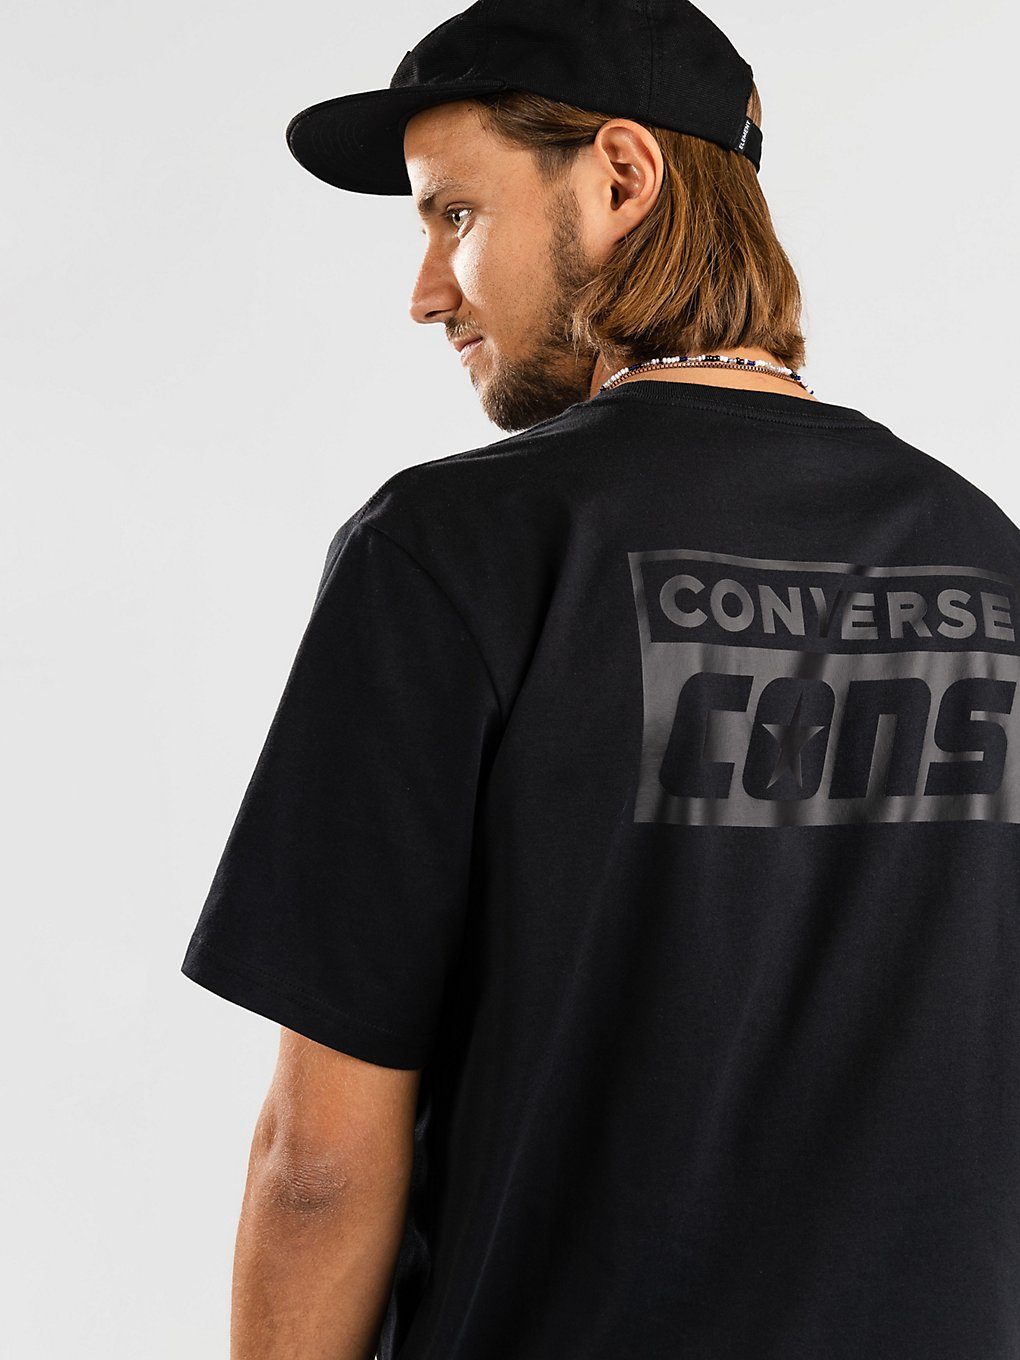 Converse Cons T-Shirt noir